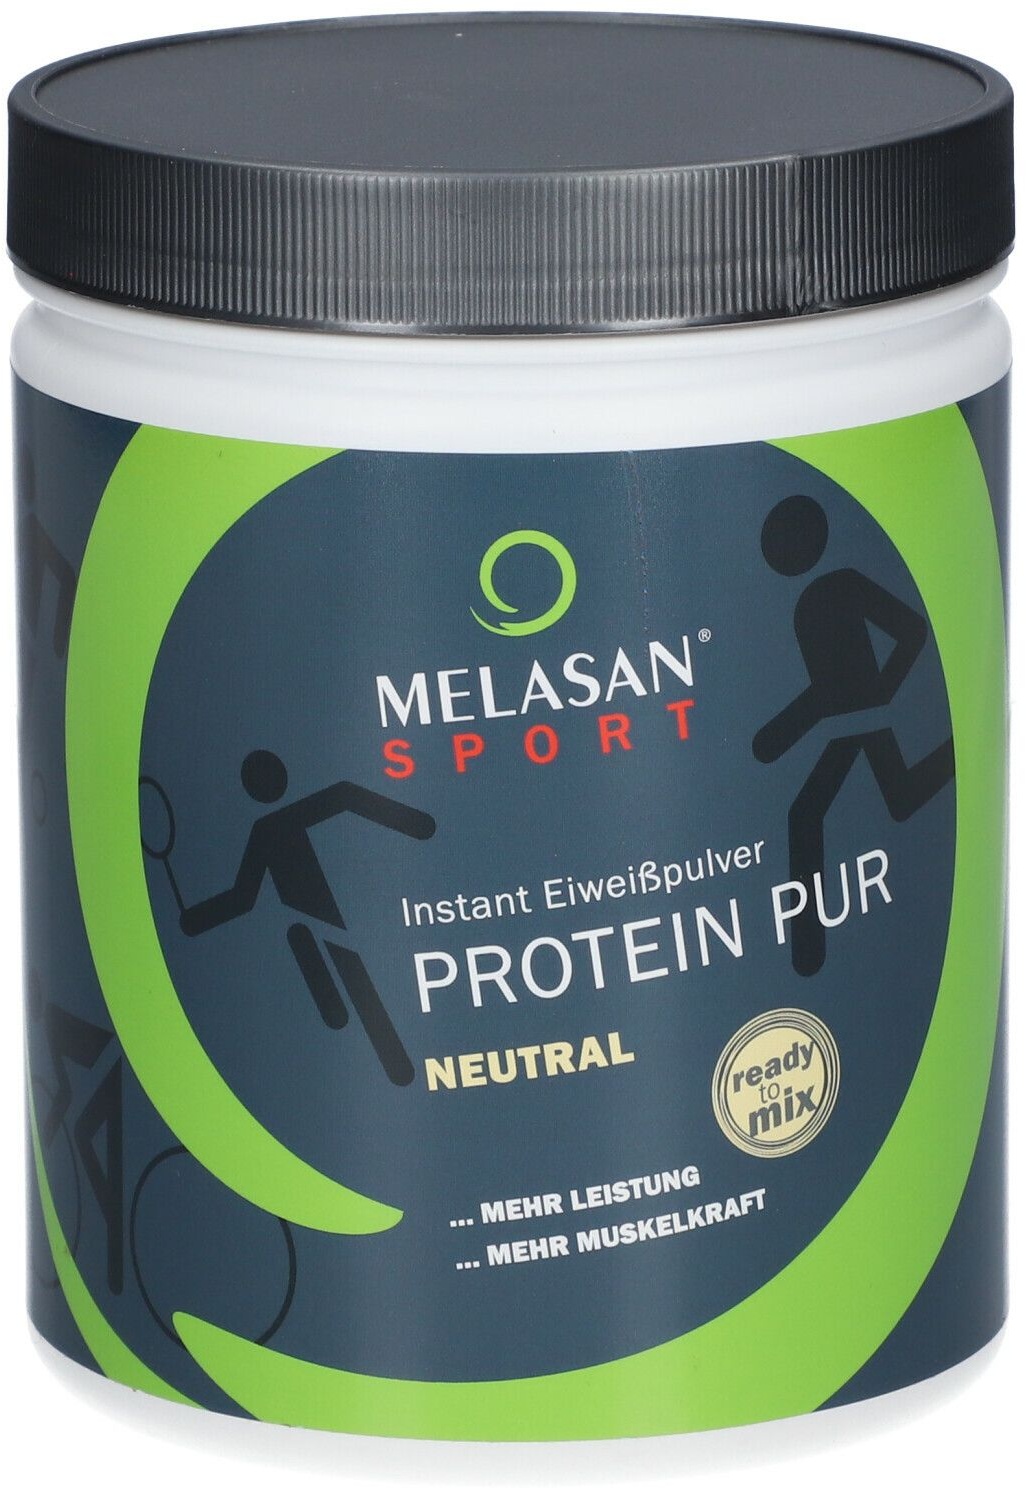 Melasan® Sport Protein Pur